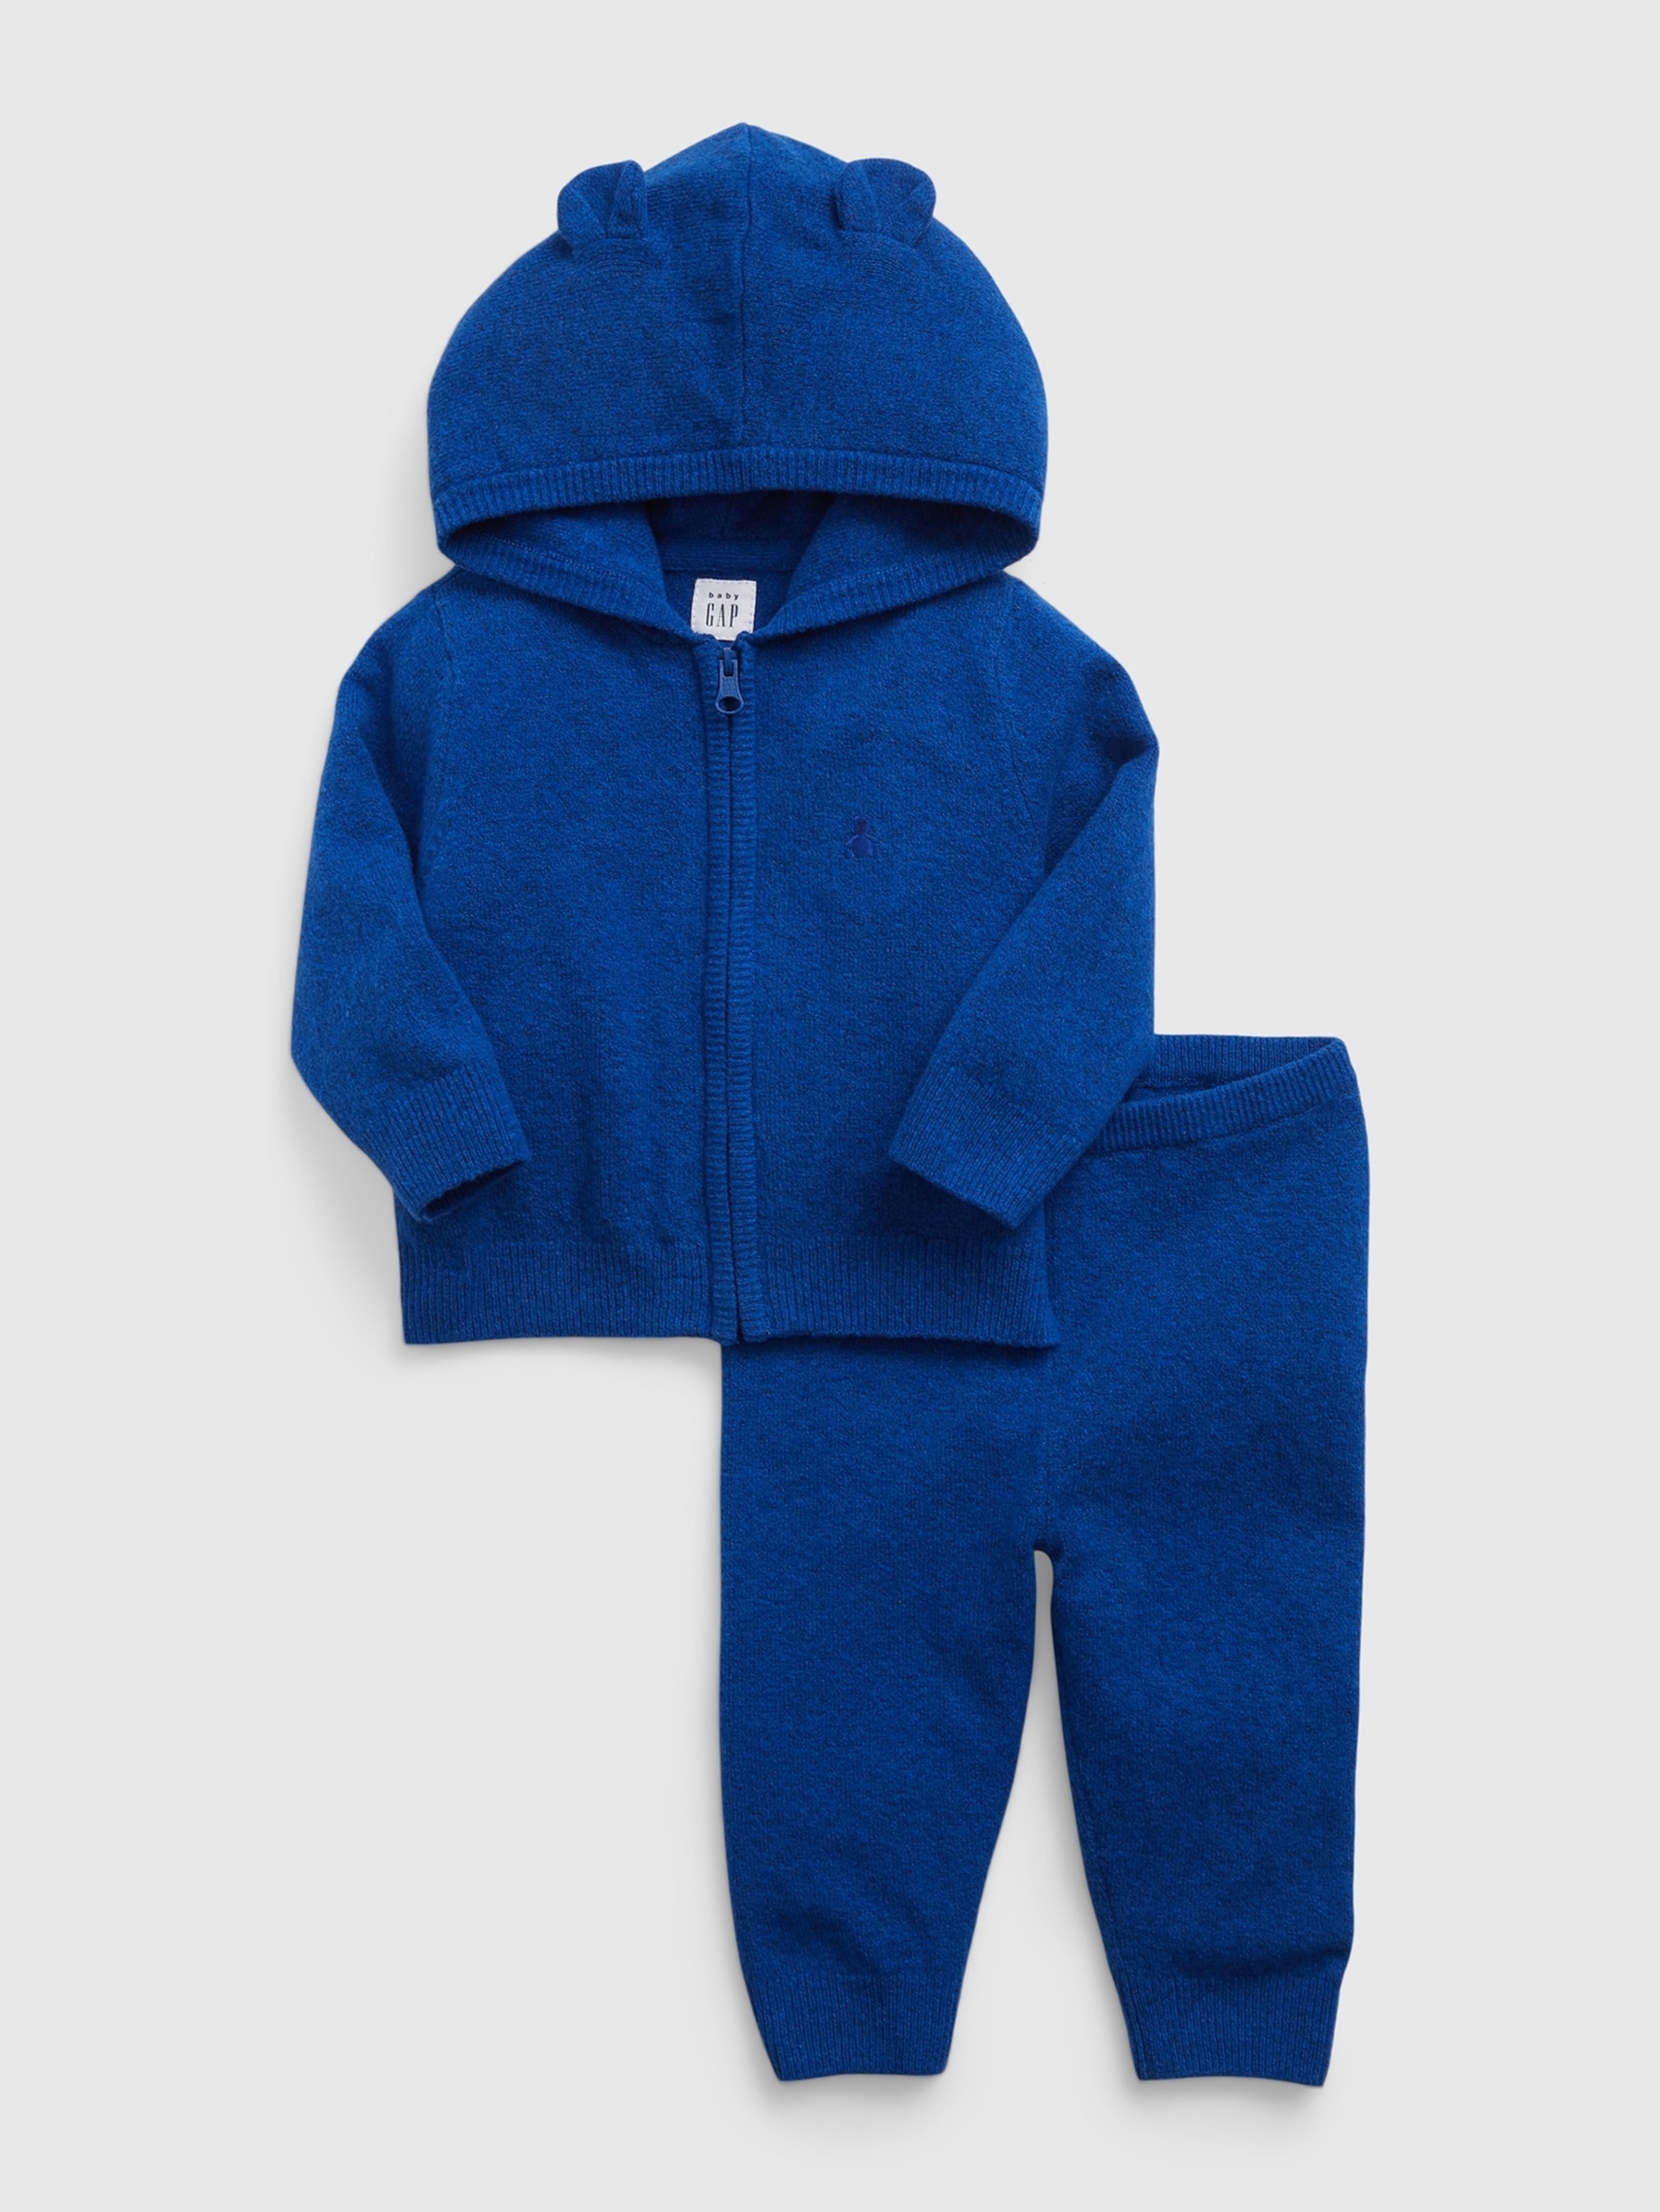 Baby pletený outfit set